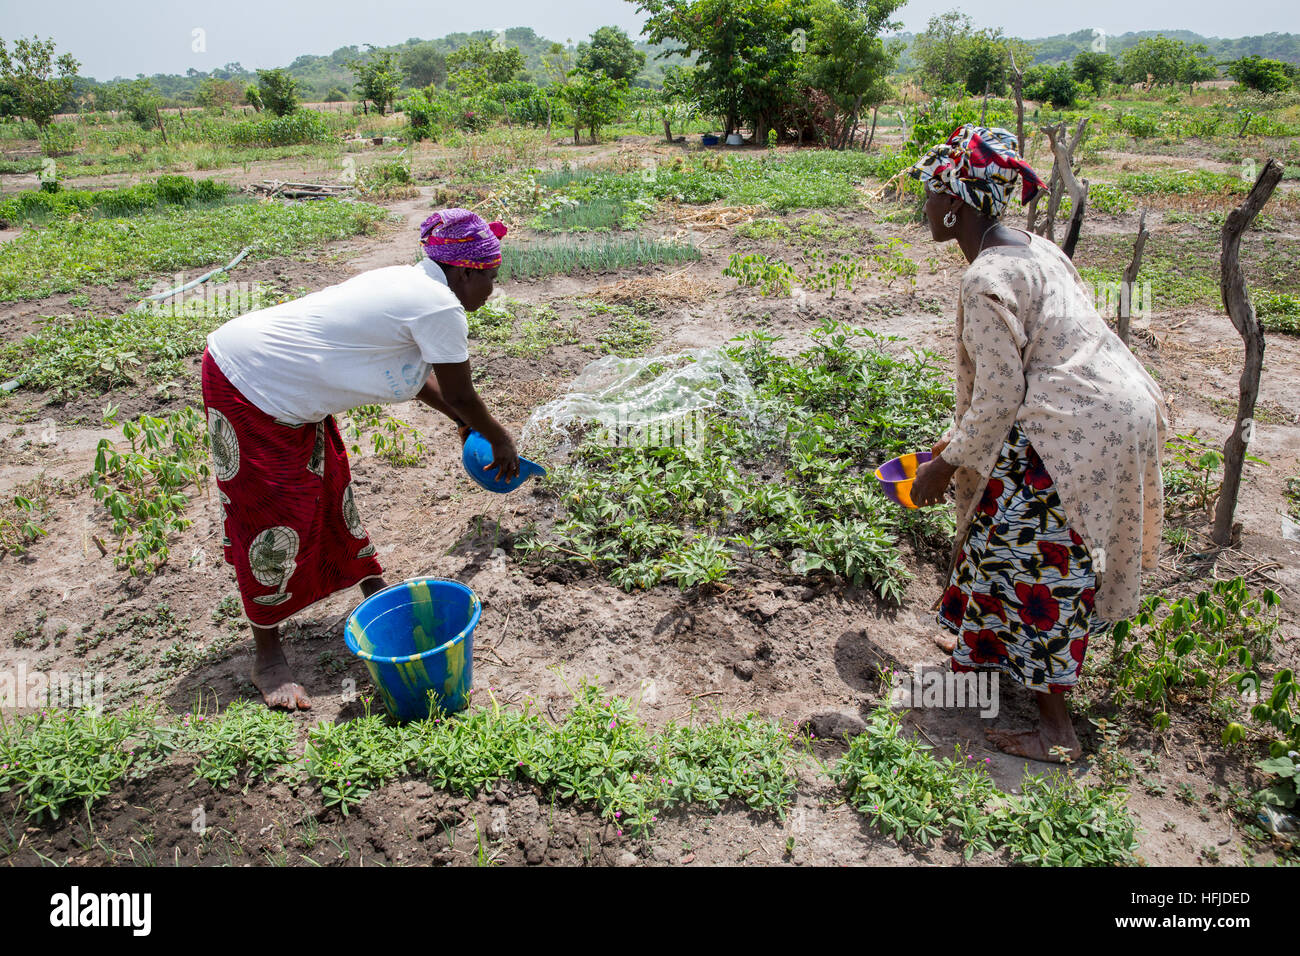 Kiniero, Guinea, 30. April 2015: Gärtnerei in der Nähe des Flusses. Fanta Condé, 45 Jahre alt, Bewässerung ihres Gartens. Stockfoto